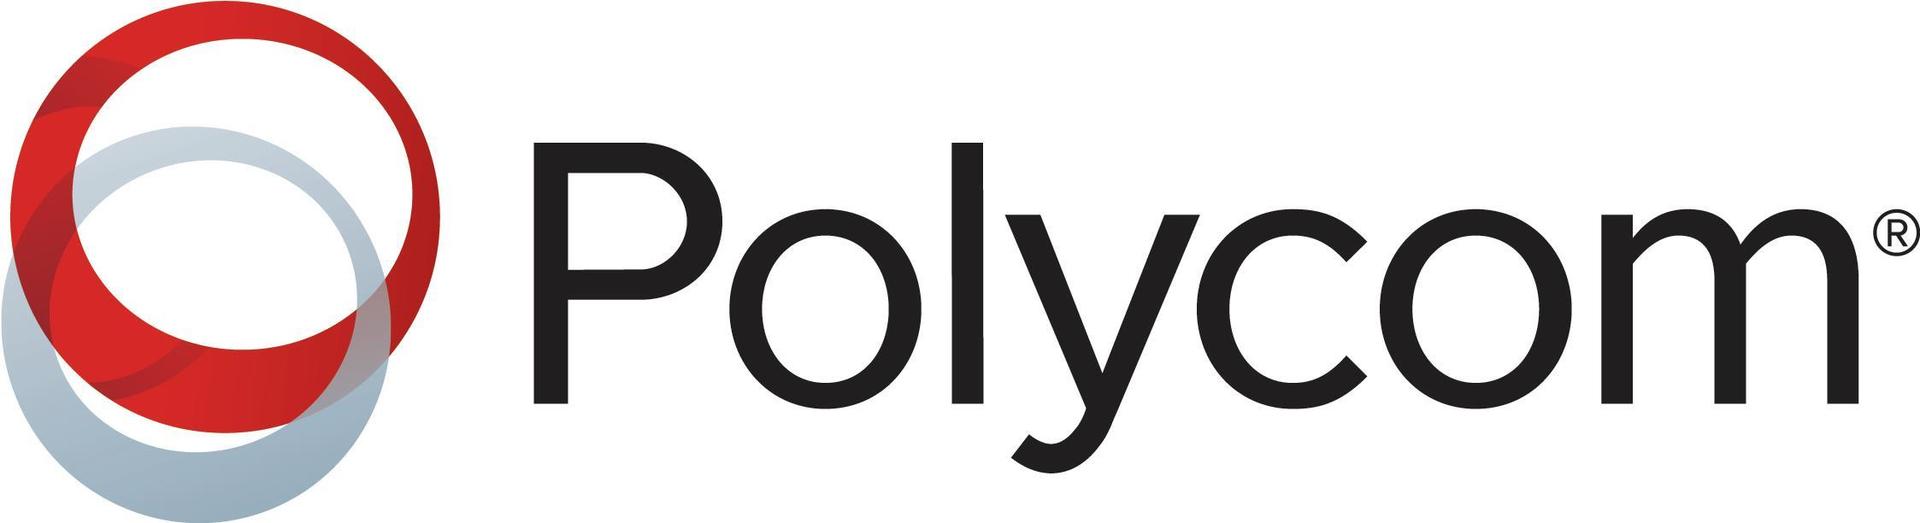 Polycom Premier - Serviceerweiterung - Erweiterter Teileaustausch - 1 Jahr - Lieferung (4870-63880-112)